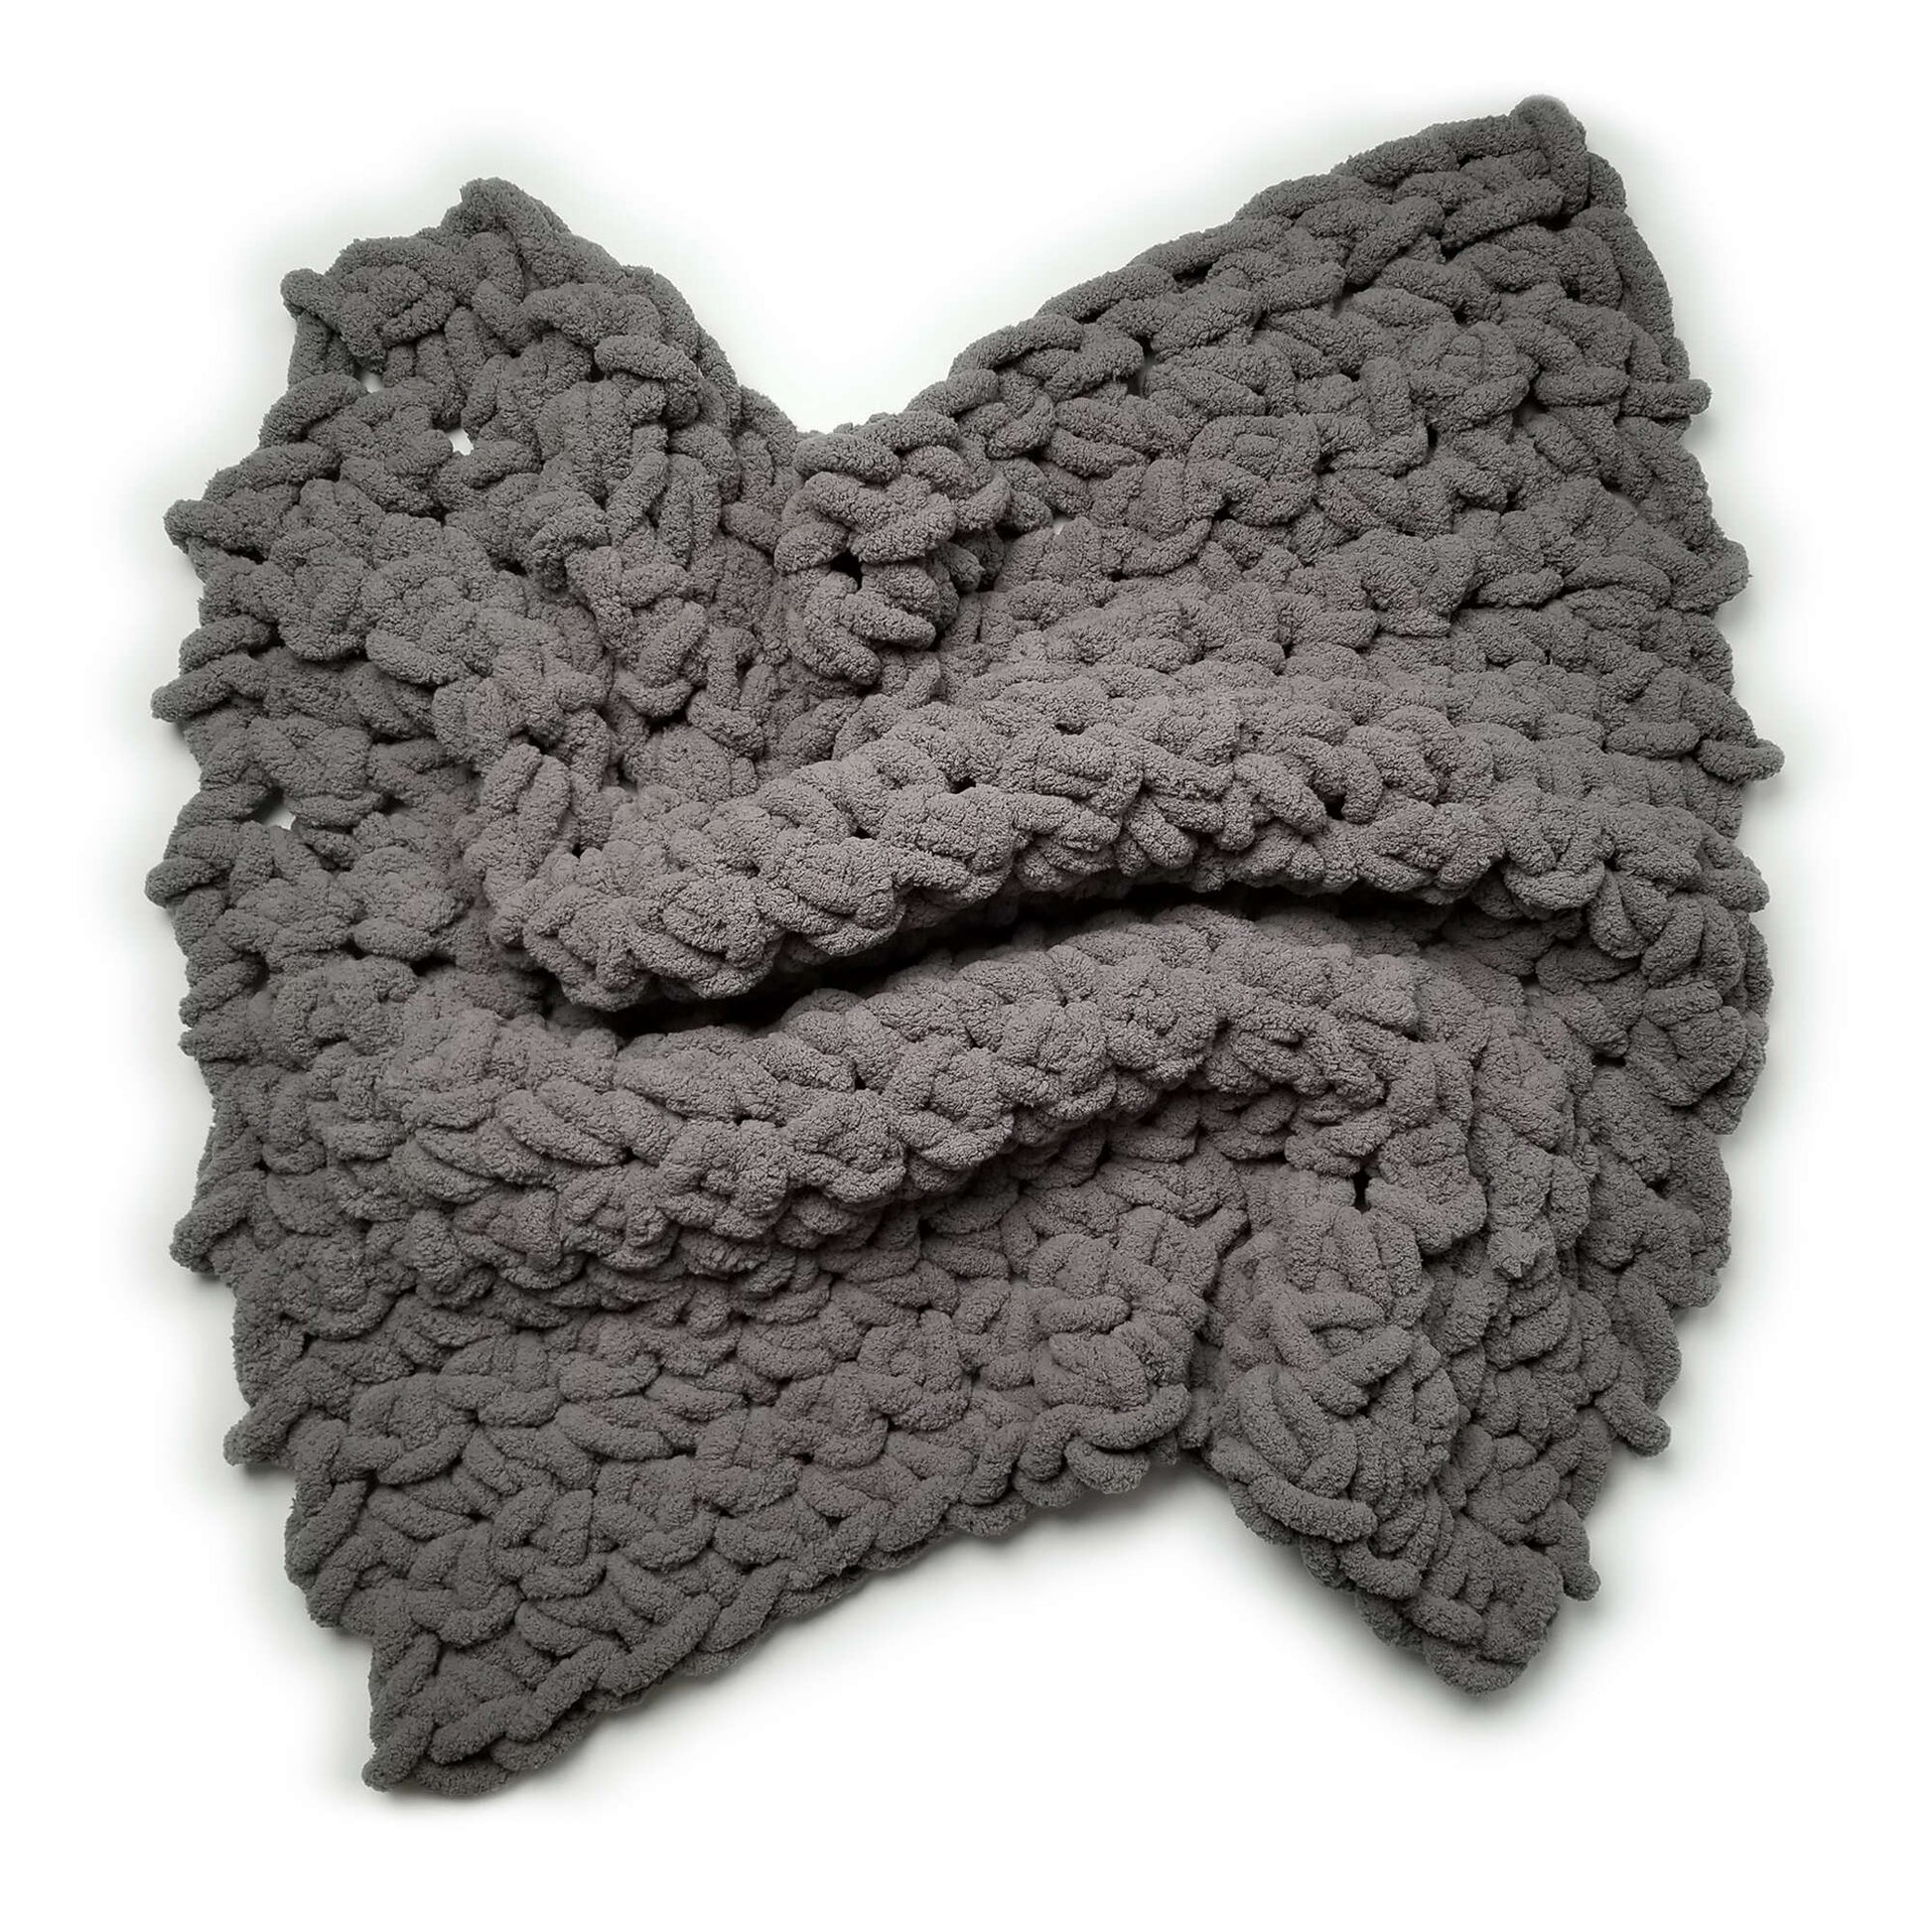 Misty Green Chunky Lap Blanket Pattern - Easy Crochet Patterns